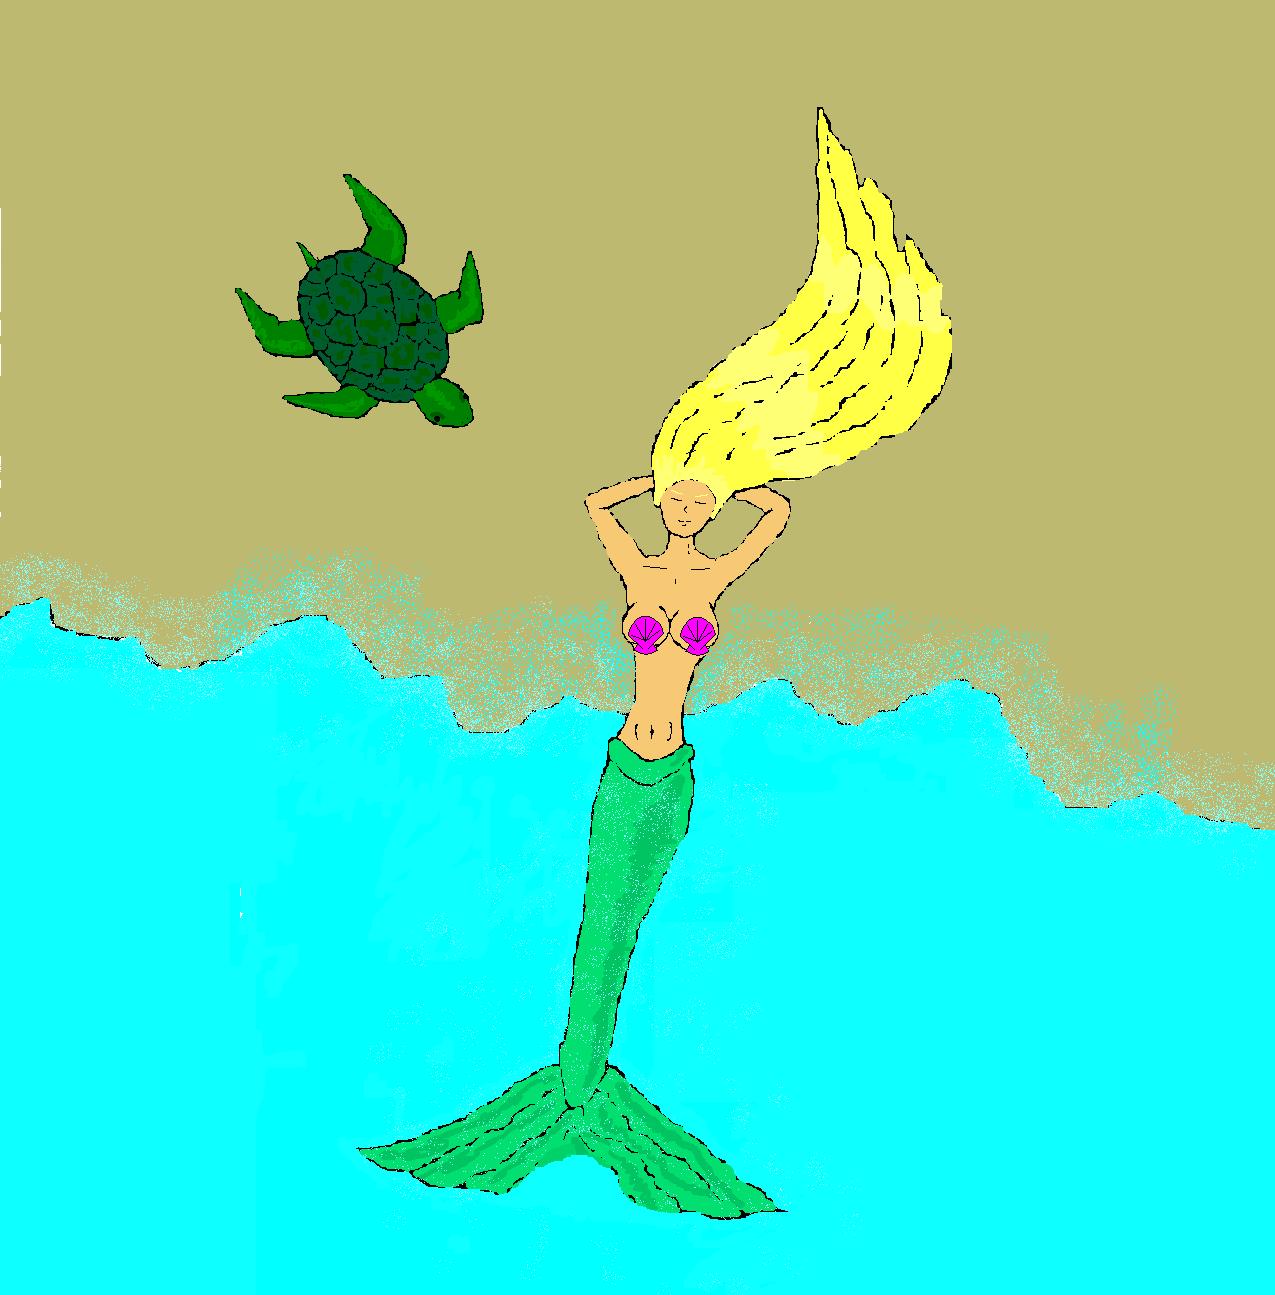 korny mermaid ( i tryed) by sunnygirl1407